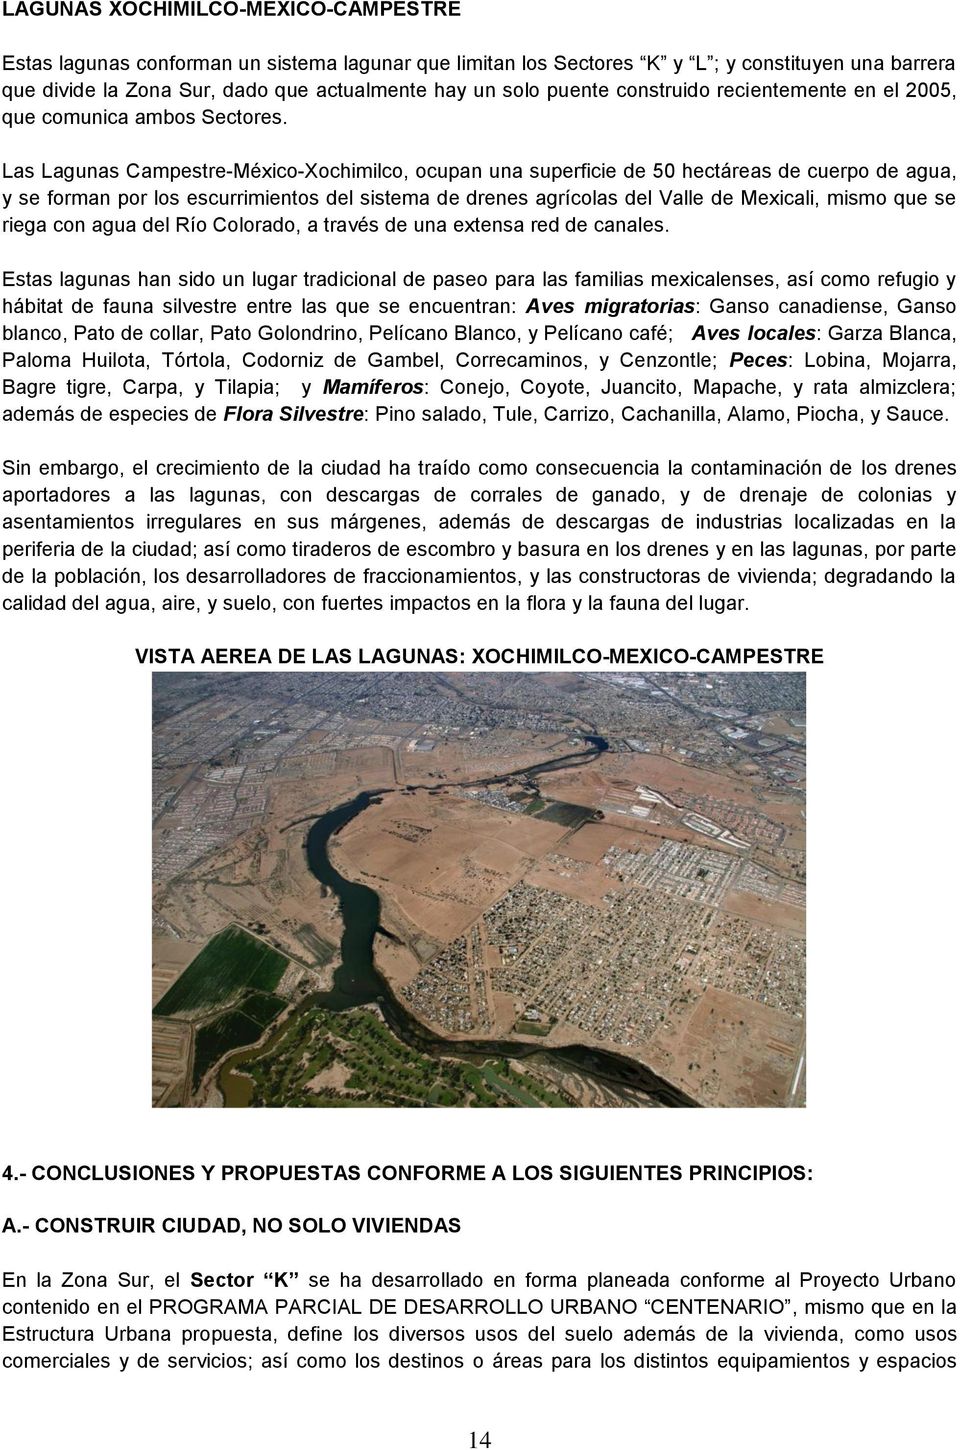 Las Lagunas Campestre-México-Xochimilco, ocupan una superficie de 50 hectáreas de cuerpo de agua, y se forman por los escurrimientos del sistema de drenes agrícolas del Valle de Mexicali, mismo que